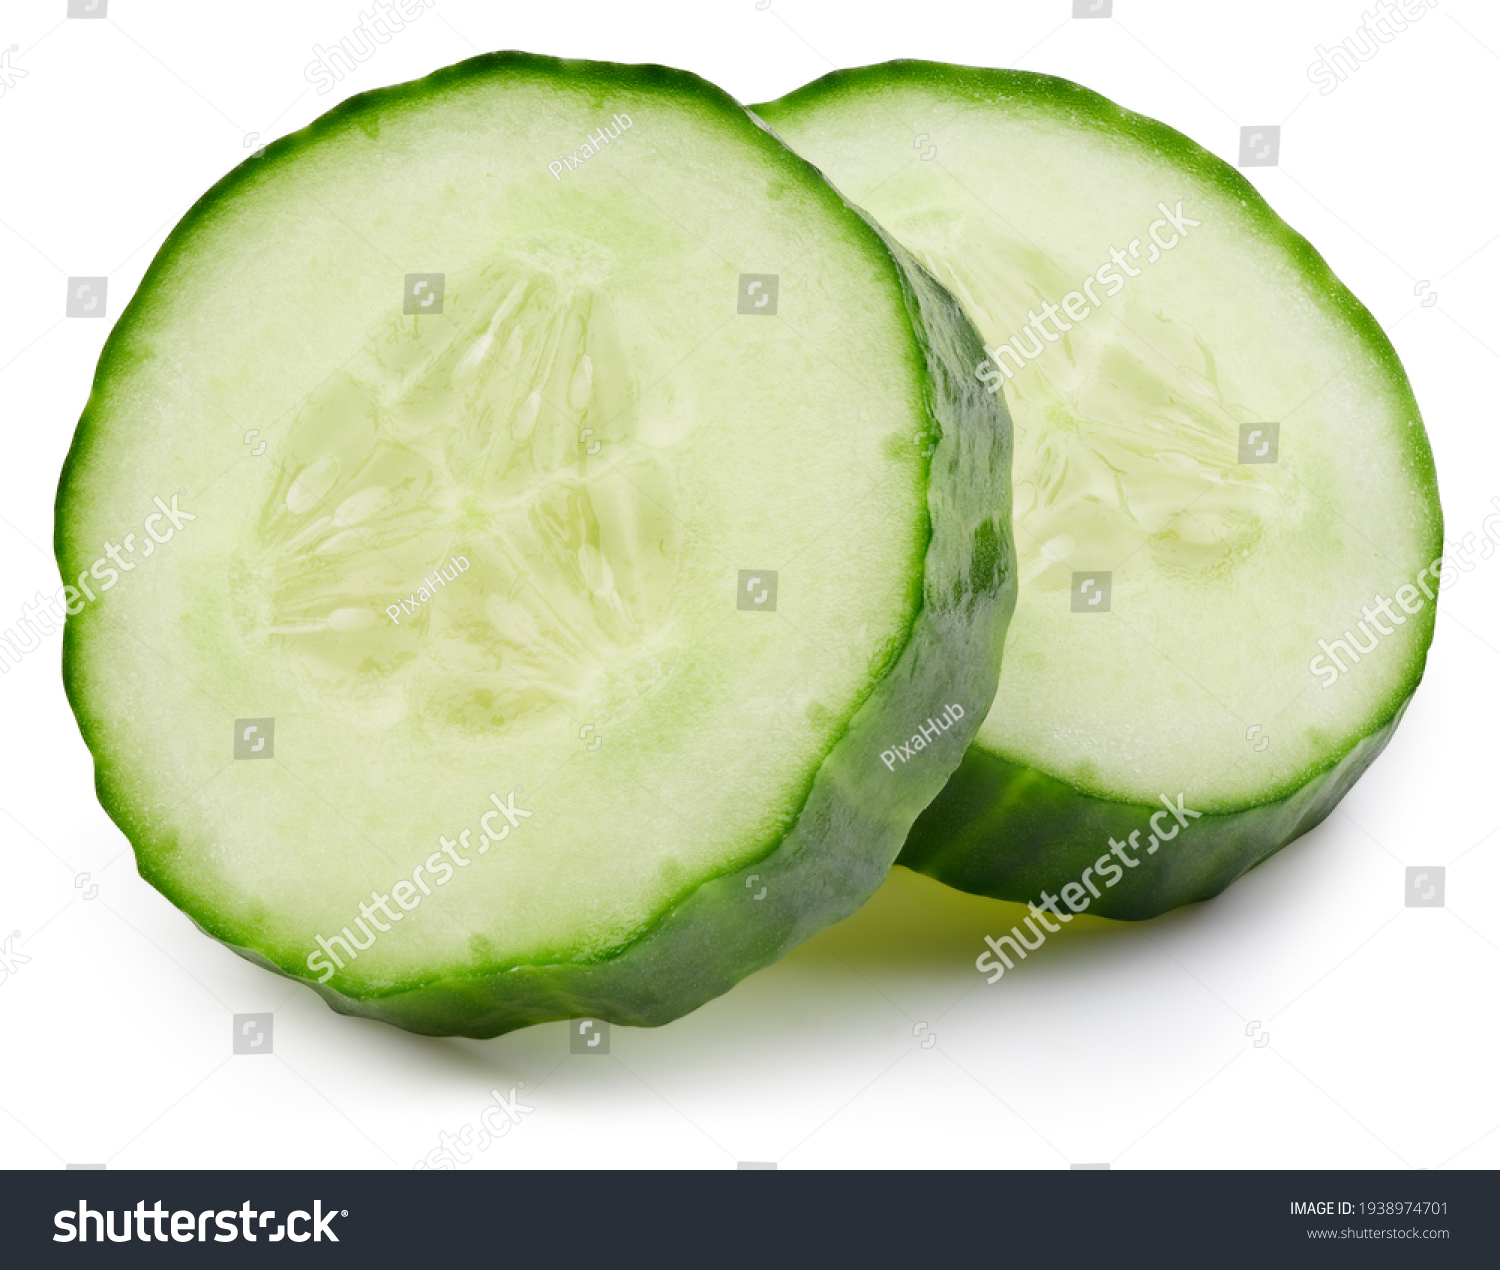 Cucumber slice isolated on white background. Cucumber on white. Cucumber with clipping path #1938974701